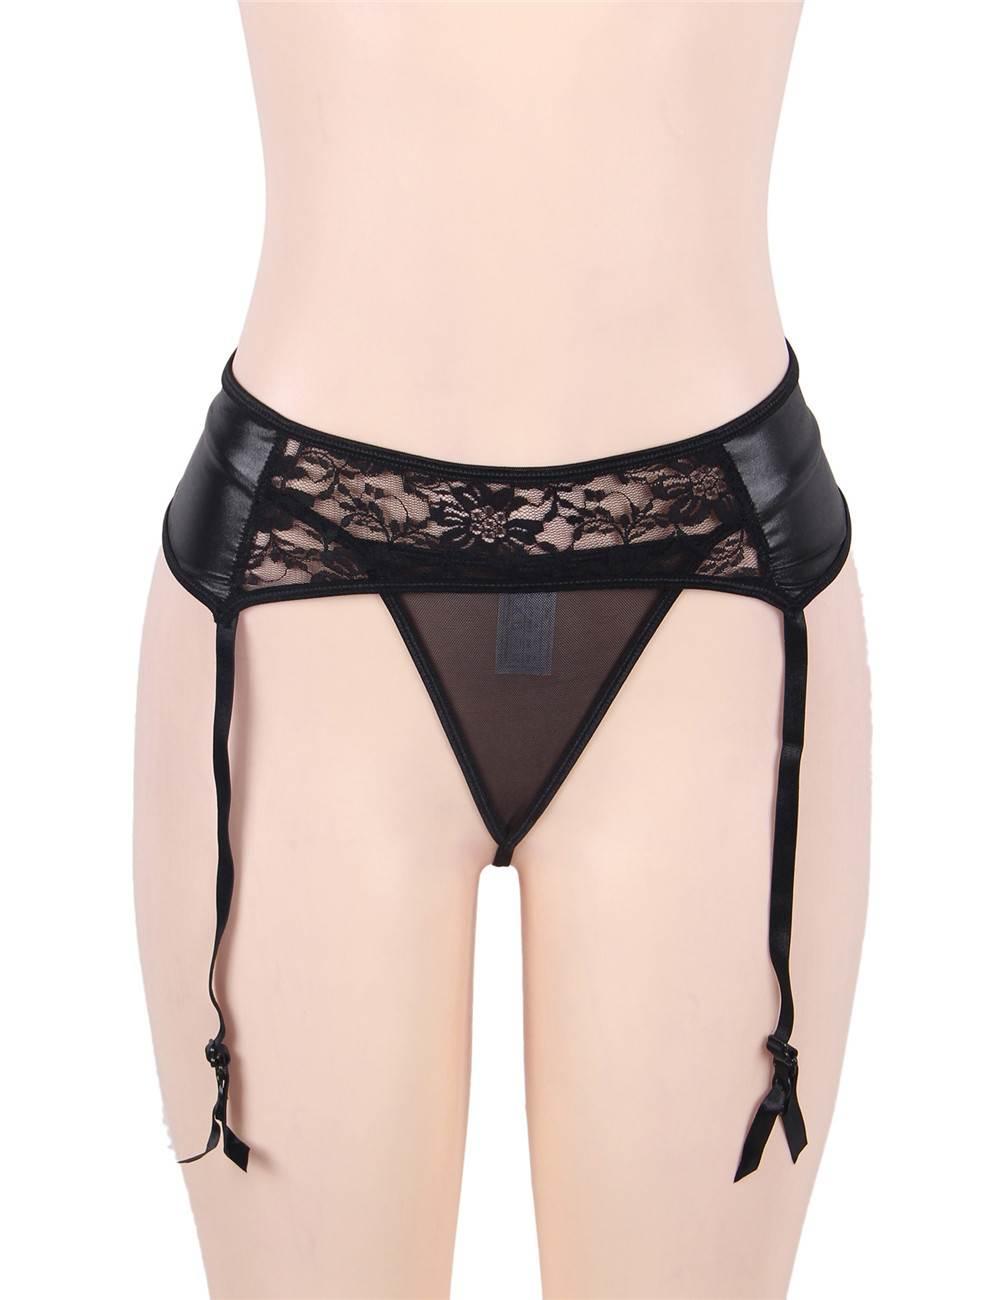 Black Lace Suspender Belt Set front view